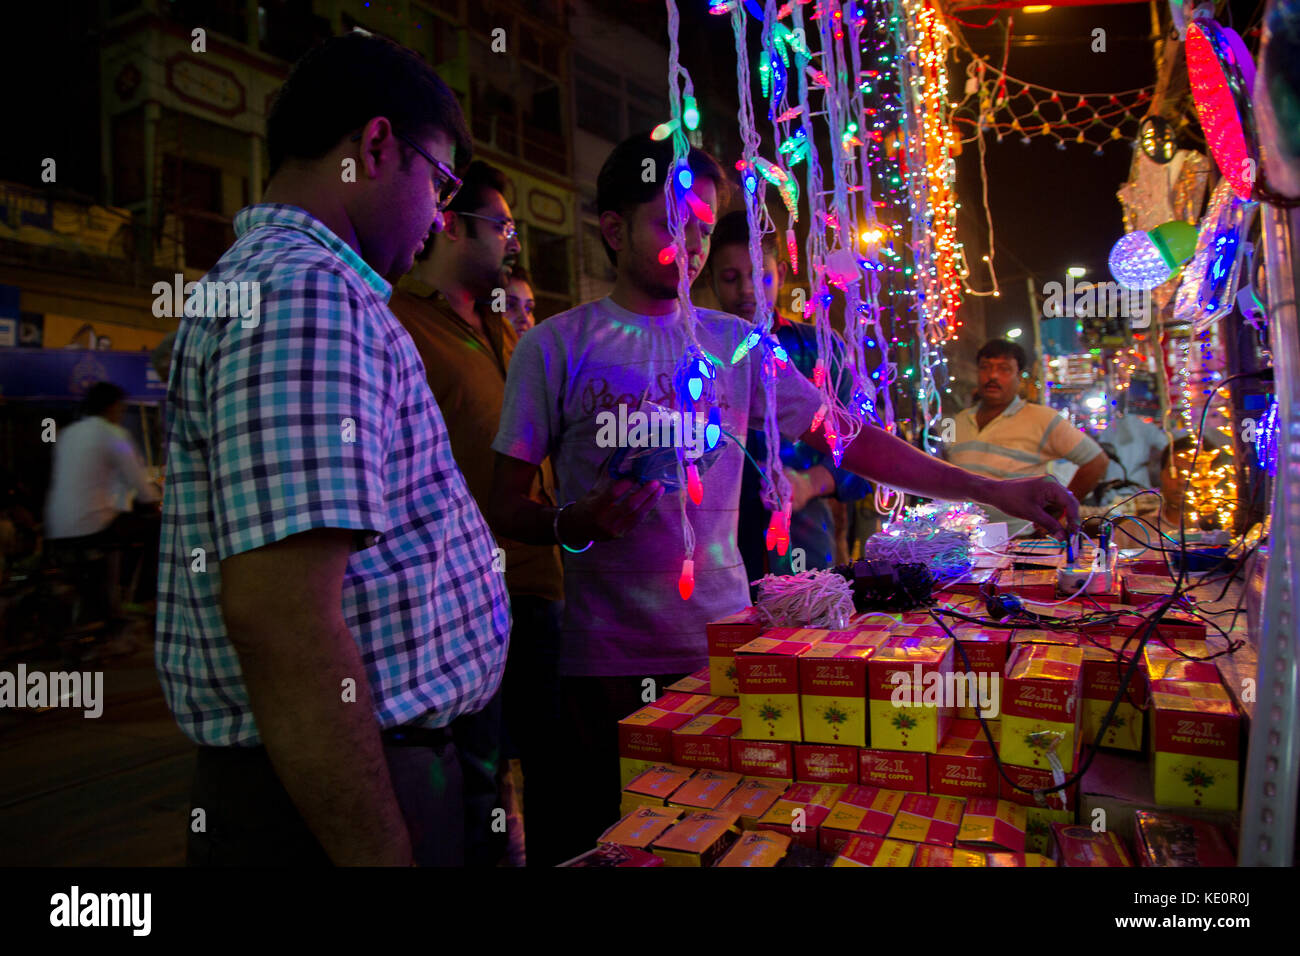 Kolkata, India. Xvii oct, 2017. In occasione del Diwali popolo di kolkata sono acquisto di illuminazione decorativa per guarnire la loro casa e aggiungere al fascino del Diwali. credito-sagnik datta credito: sagnik datta/alamy live news Foto Stock